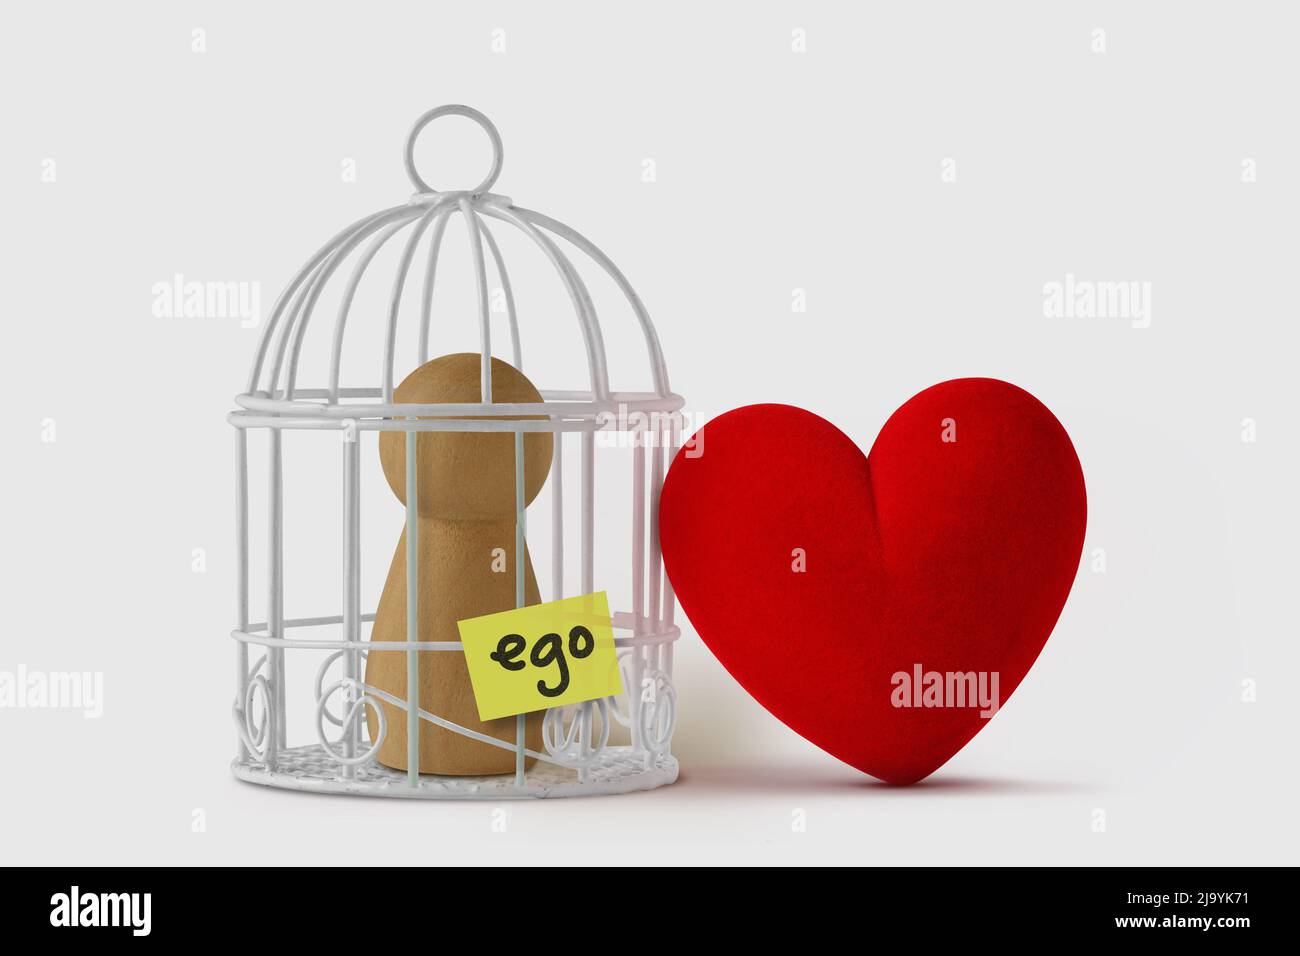 Pfand in einem Vogelkäfig mit dem Wort Ego auf Papiernote geschrieben und freies Herz - Liebe und Ego-Konzept Stockfoto